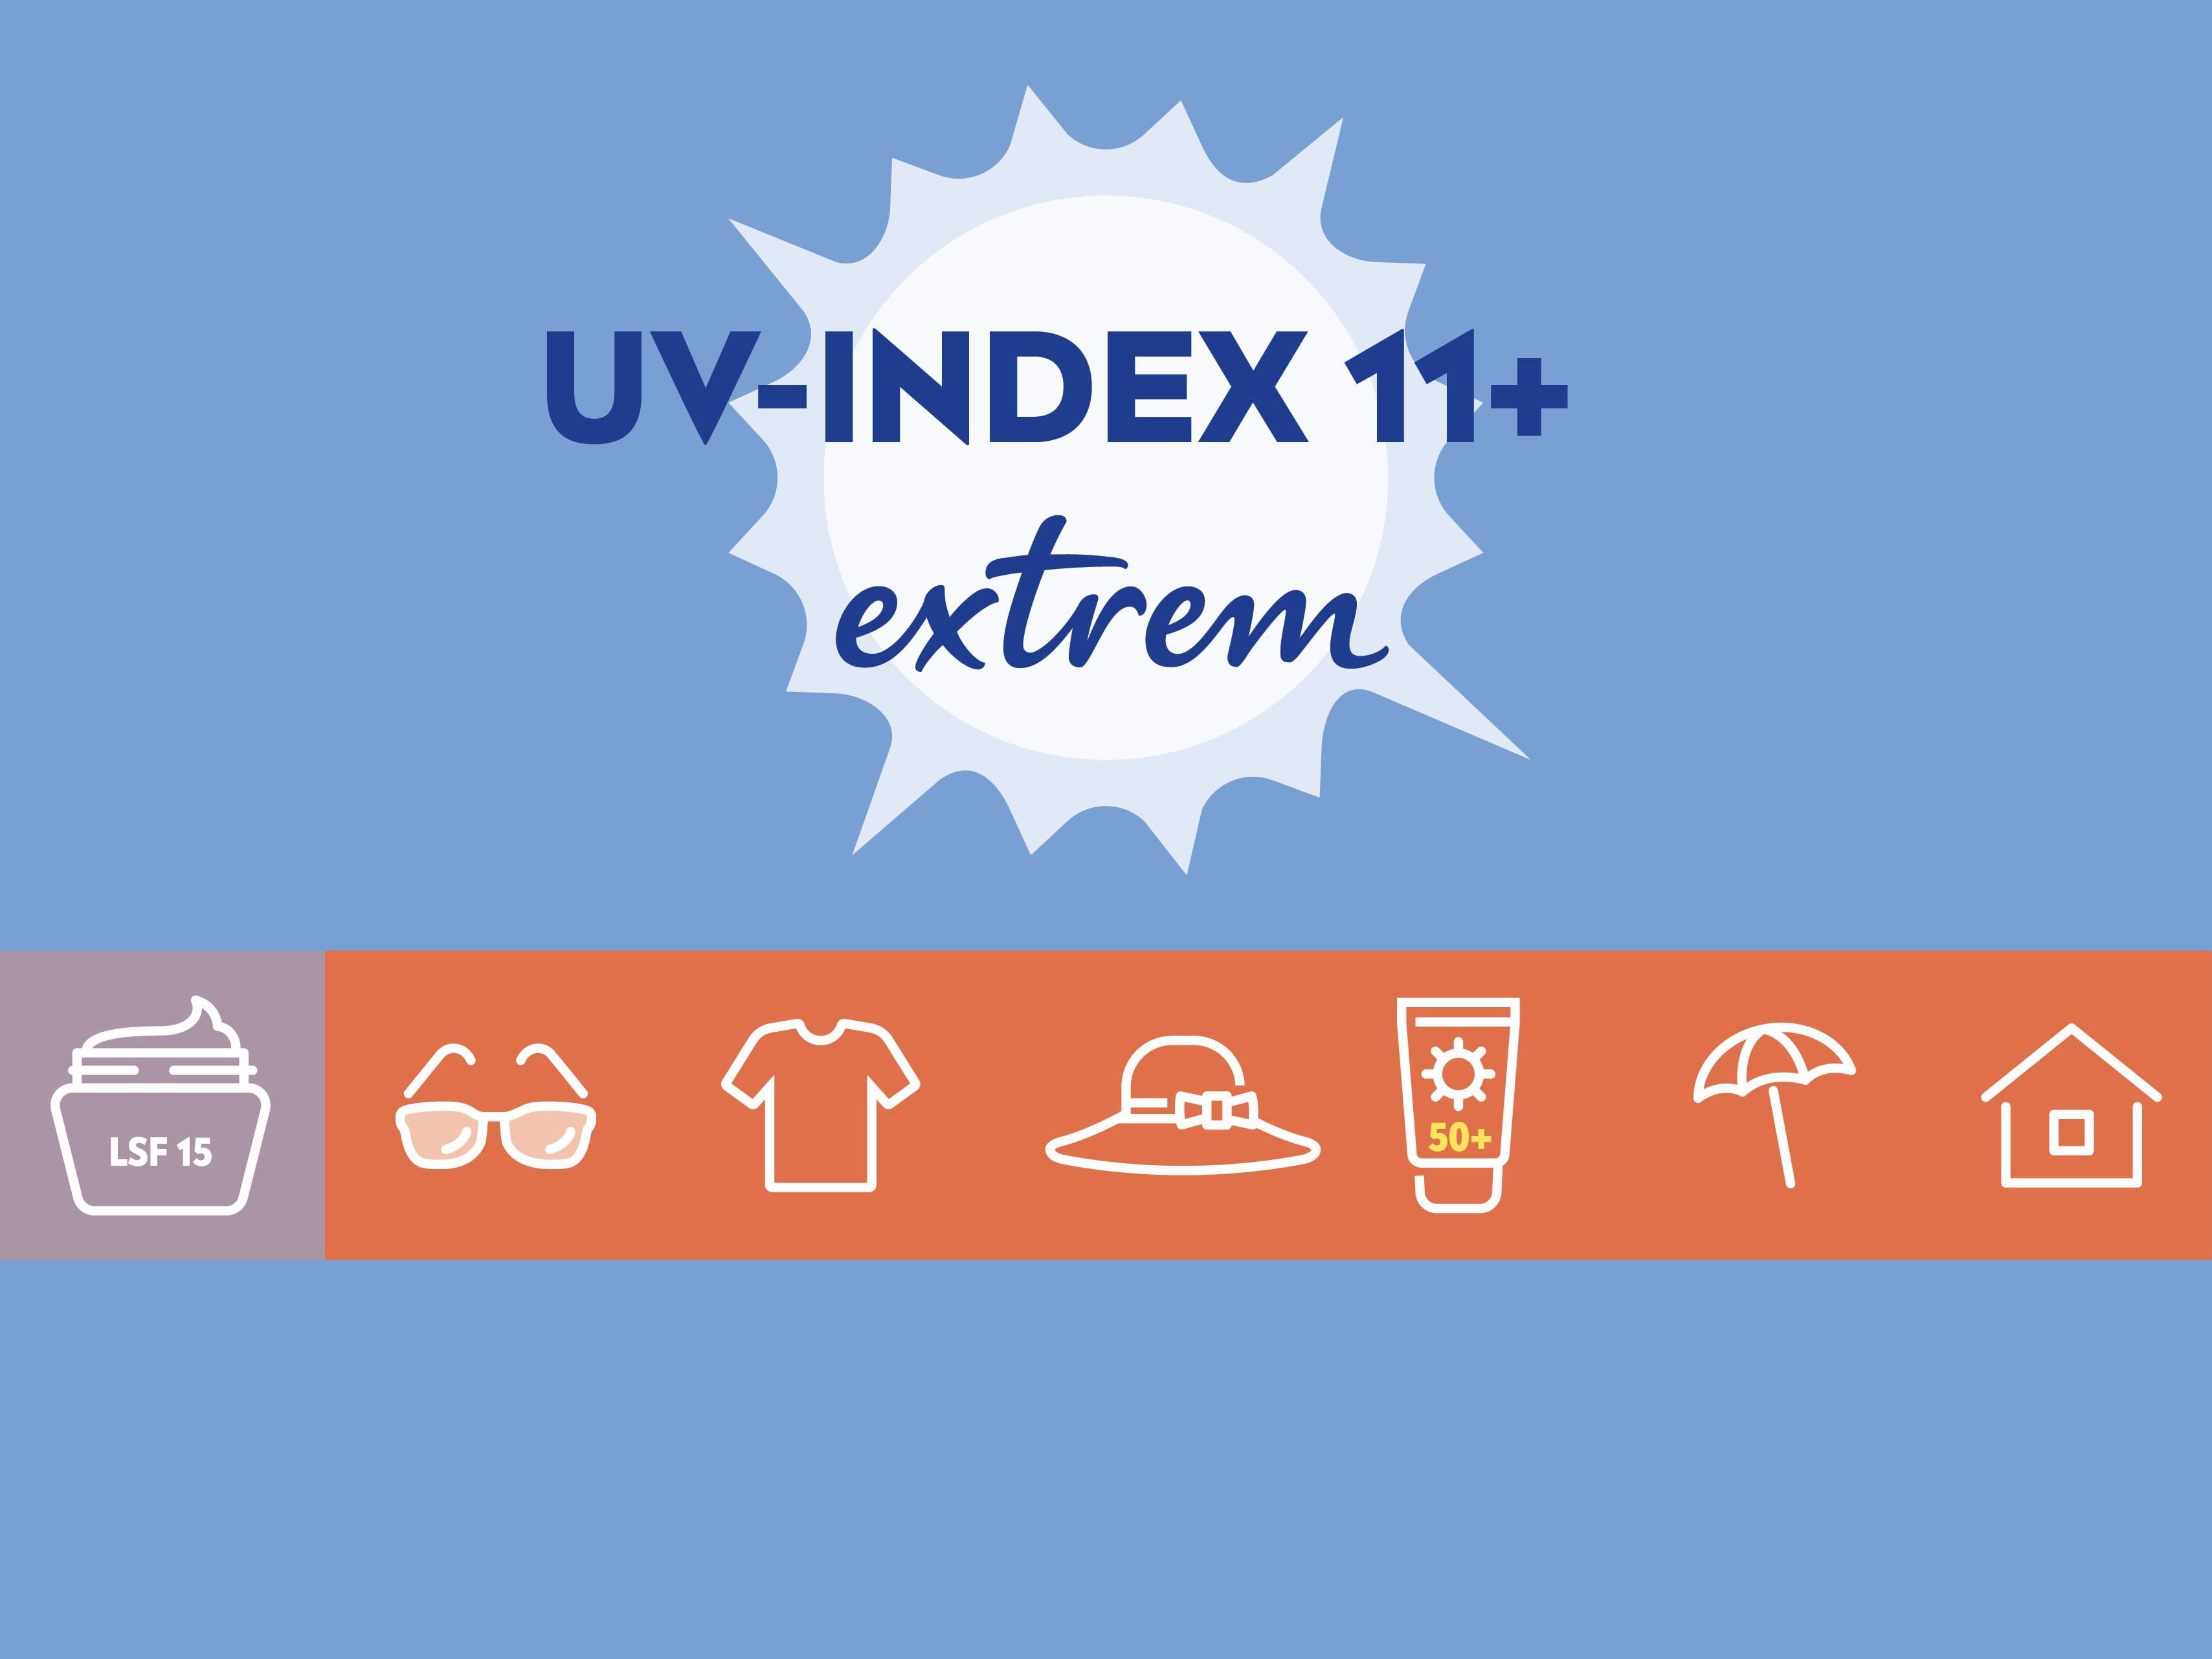  Bei einem extrem hohen UV-Index von 11+ sollte man sich wenn möglich nicht im Freien aufhalten. Sollte man doch im Freien unterwegs sein, sind alle zuvor aufgeführten Schutzmassnahmen ein Muss.